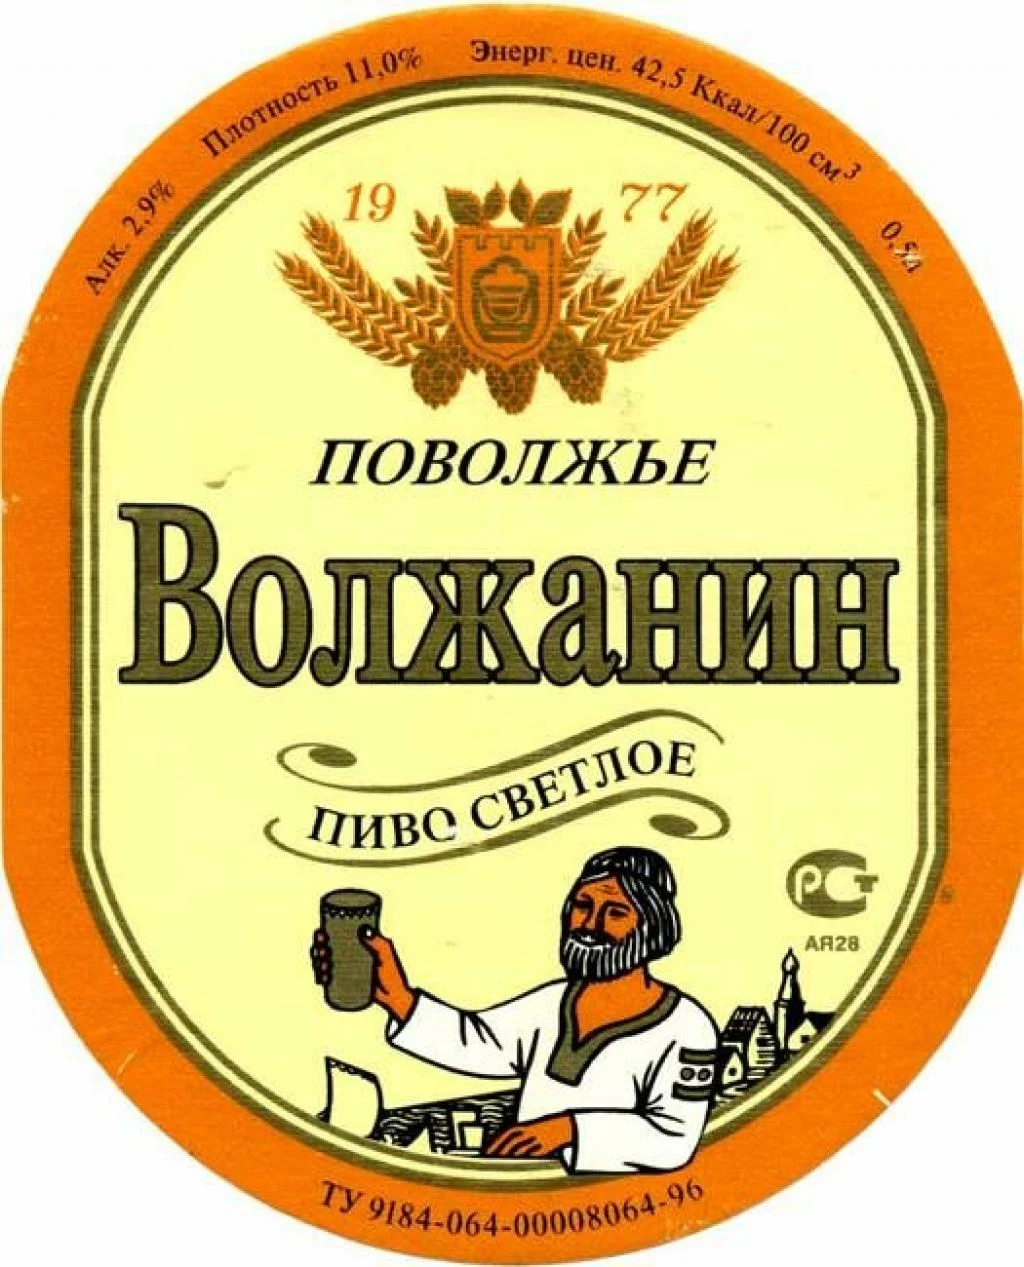 Пиво "Волжанин". Фото с сайта Павла Егорова: nubo.ru